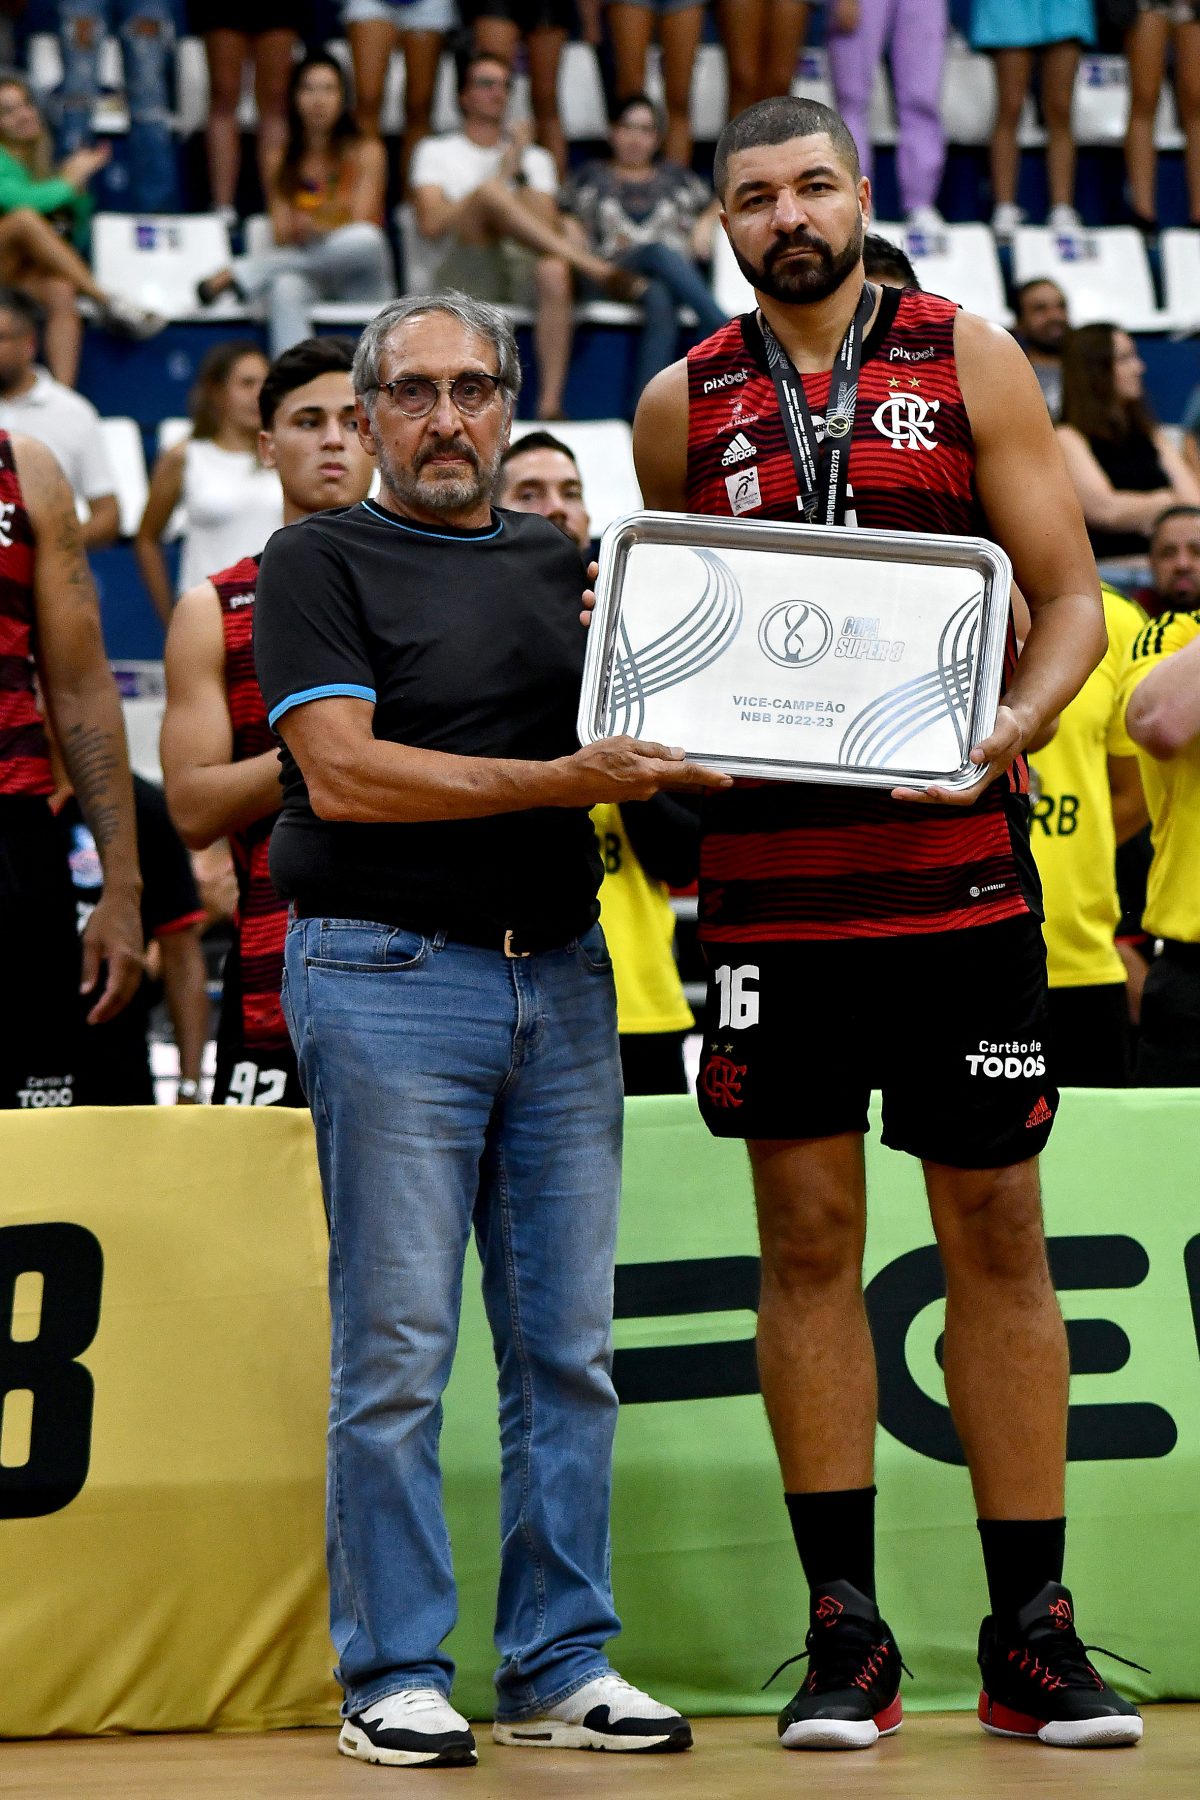 Flamengo Campeão Mundial de Basquete! - Fim de Jogo